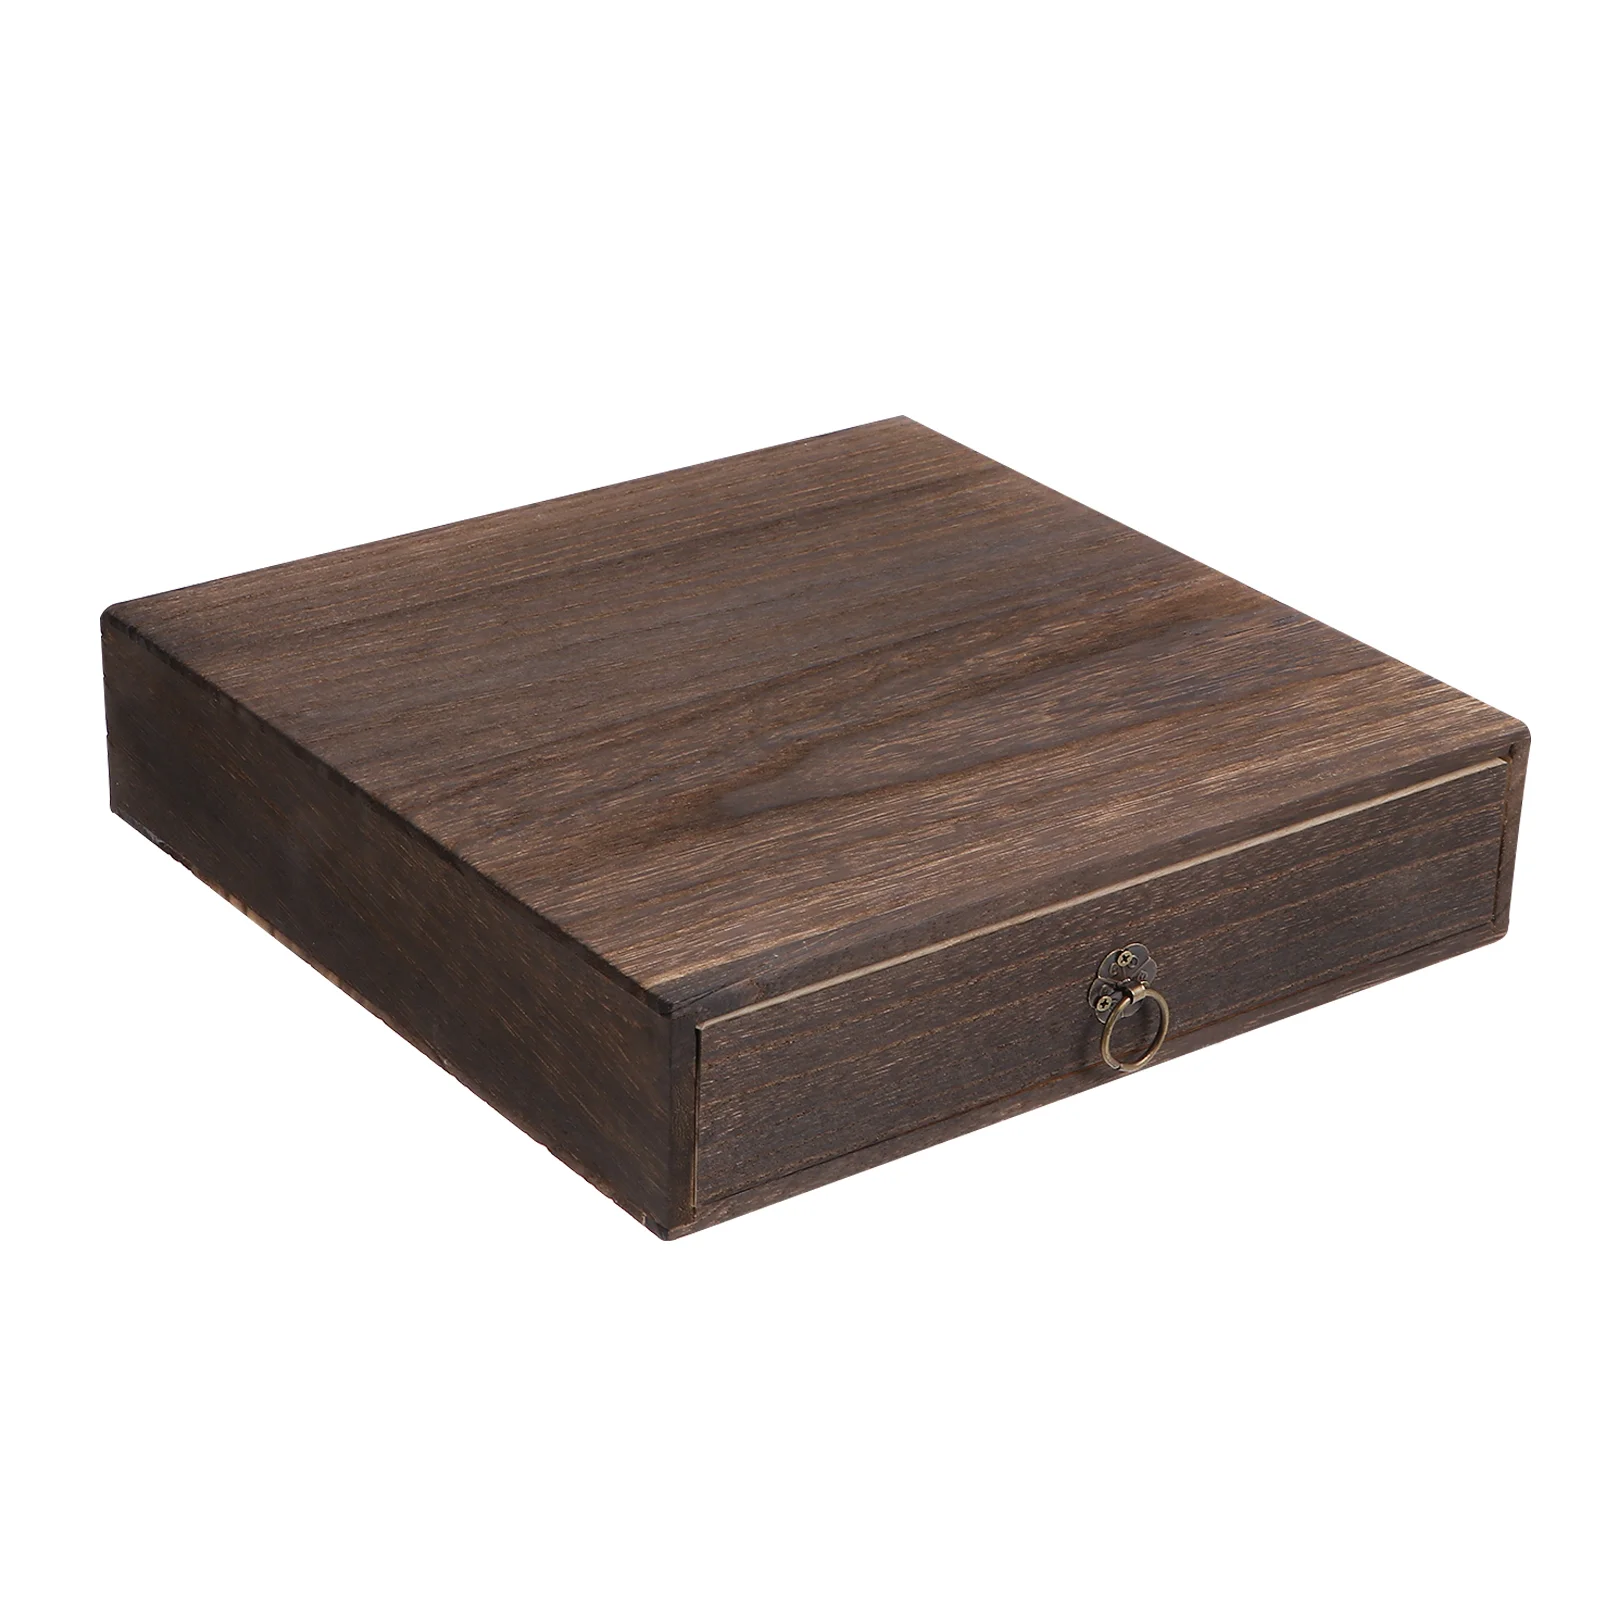 

Ящик для стола из массива дерева, декоративный Настольный деревянный Органайзер с выдвижными ящиками, подарок с Сантой, хранение канцелярских принадлежностей